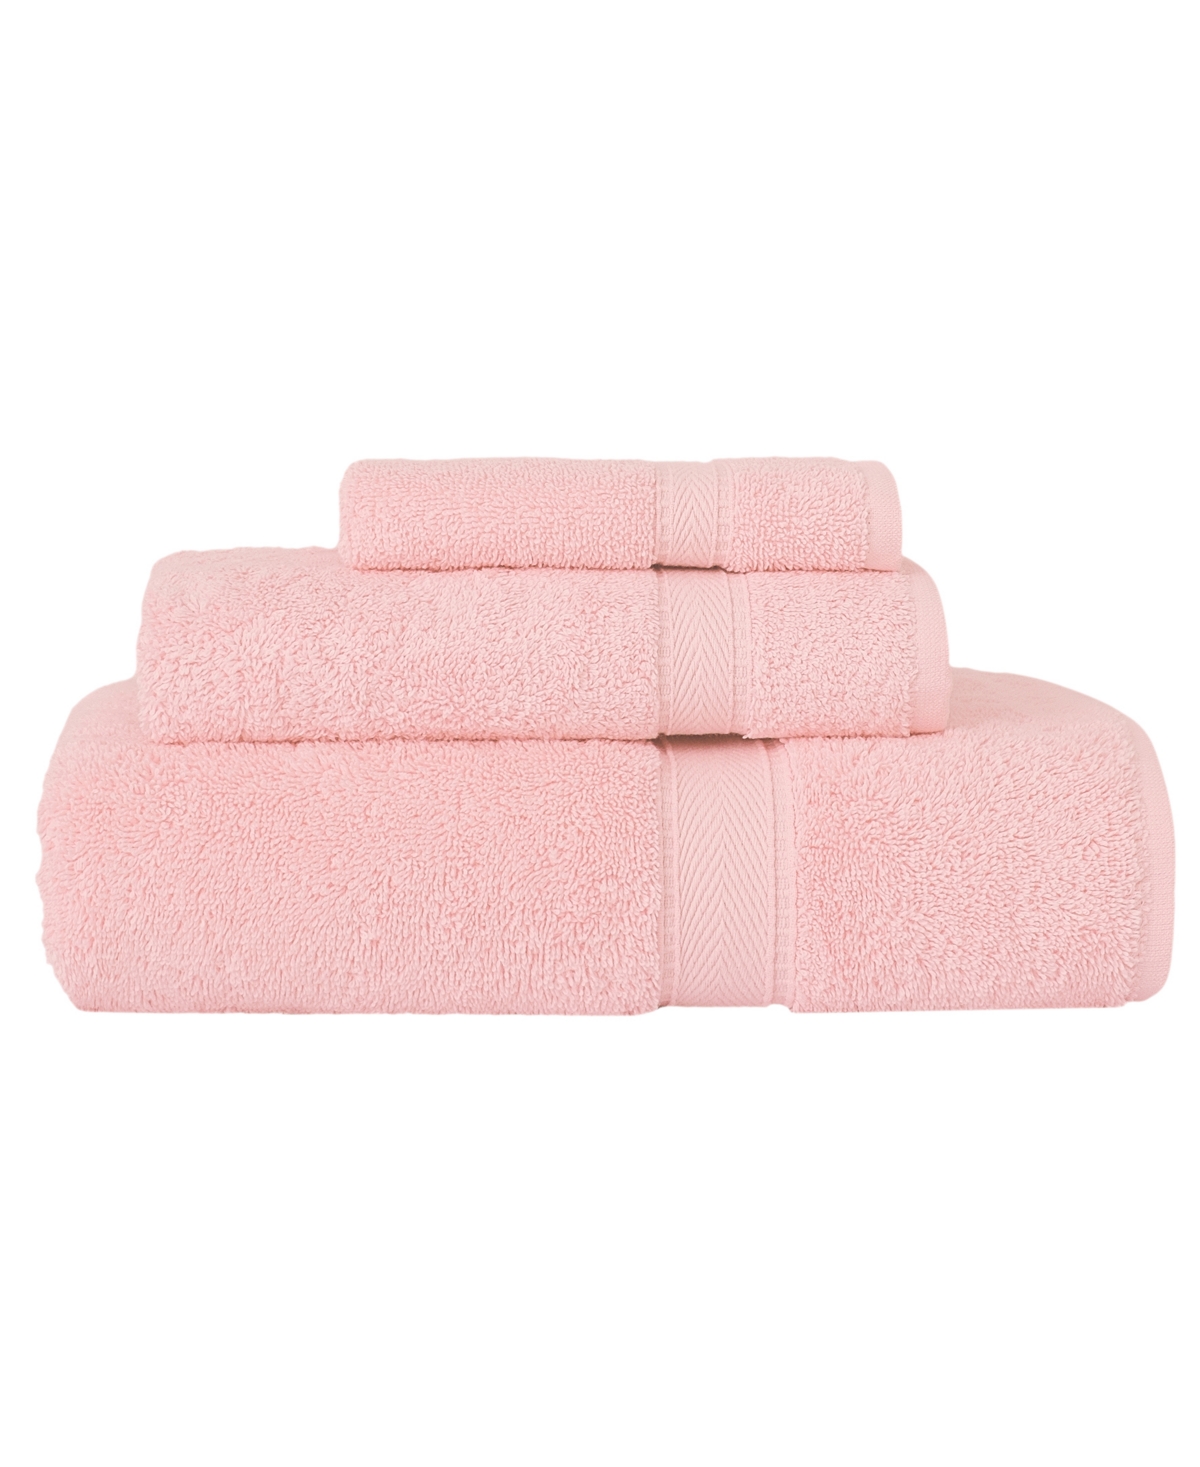 Linum Home Sinemis 3-pc. Towel Set In Pink